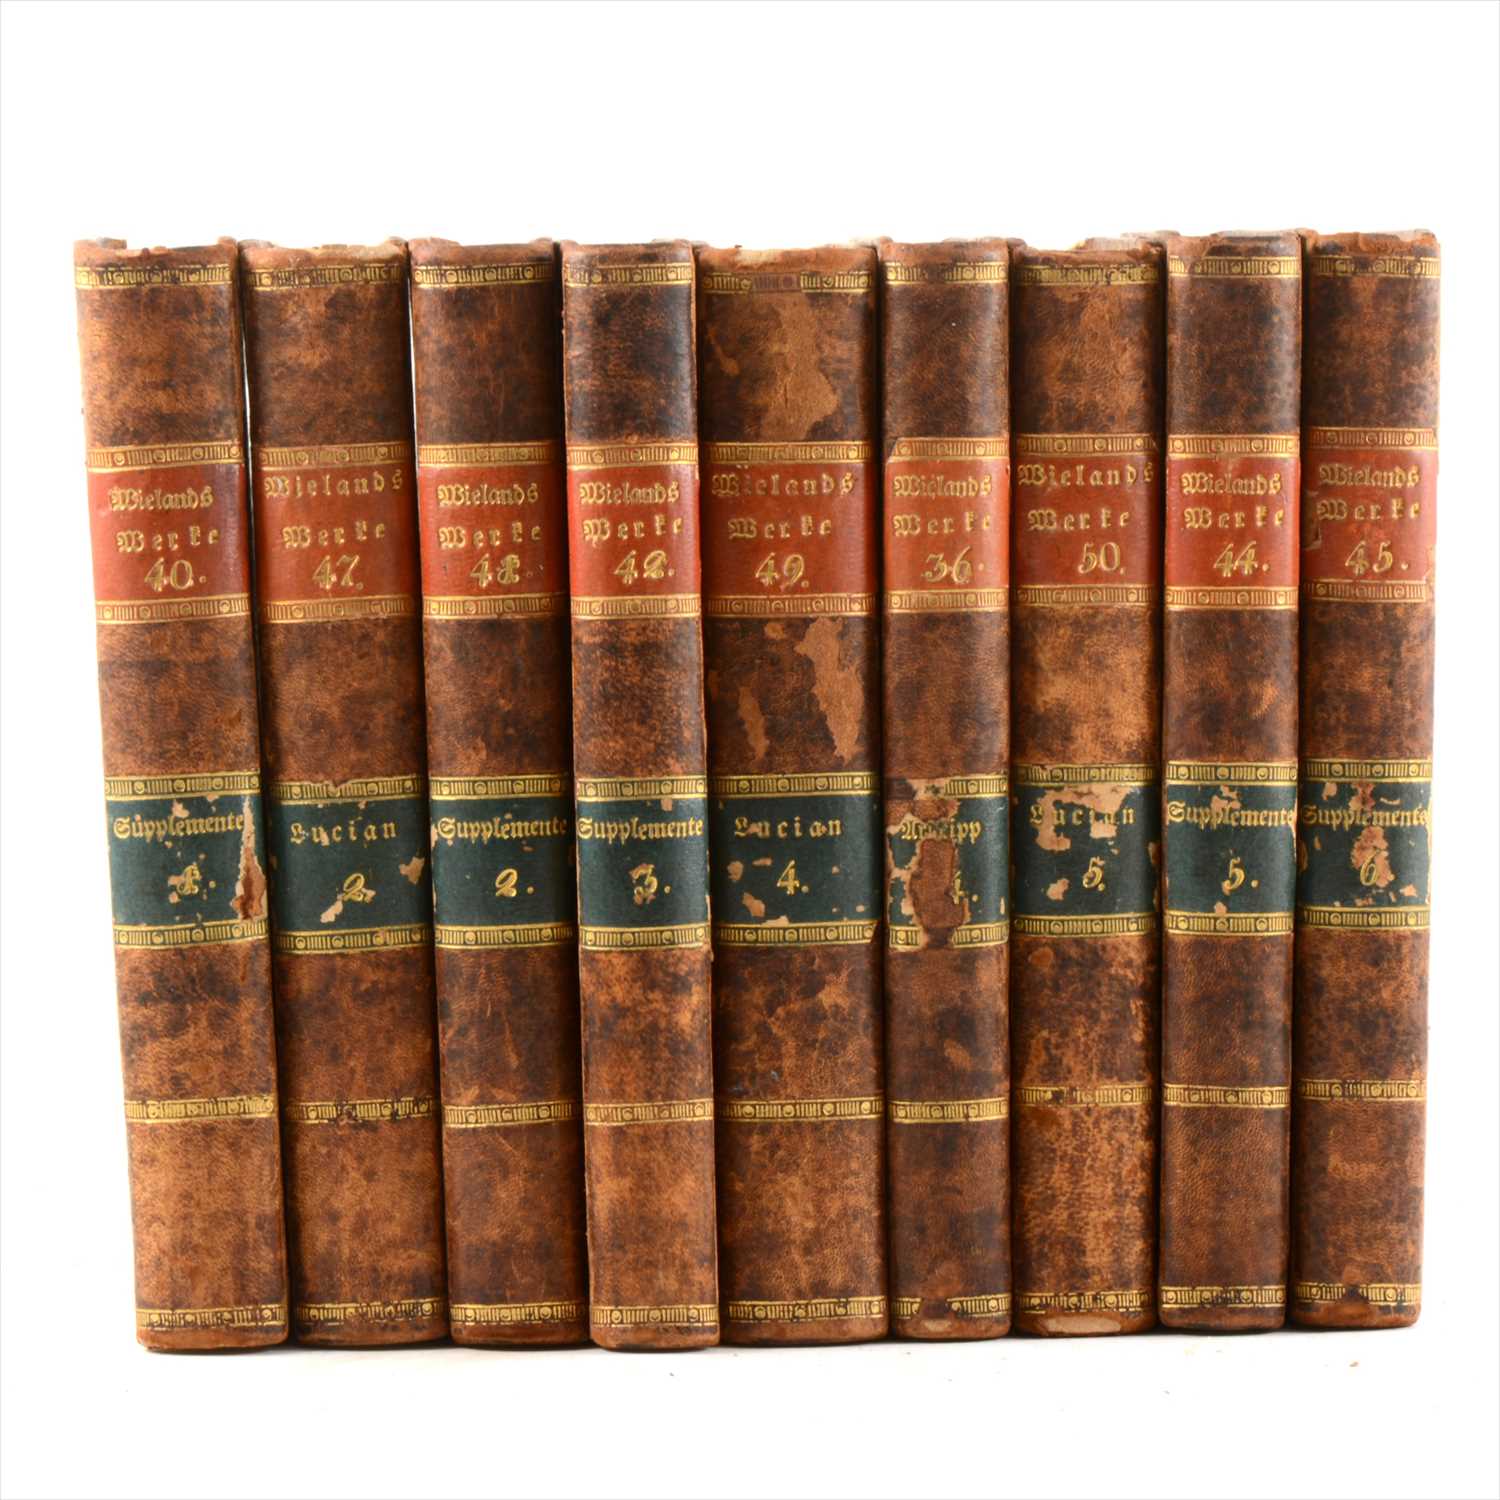 Lot 49 - C M BIELANDS, Fammtliche Berte, published Bien, 1812, 9 vols, half leather bound, numbered 36, 40, 42, 44-50.